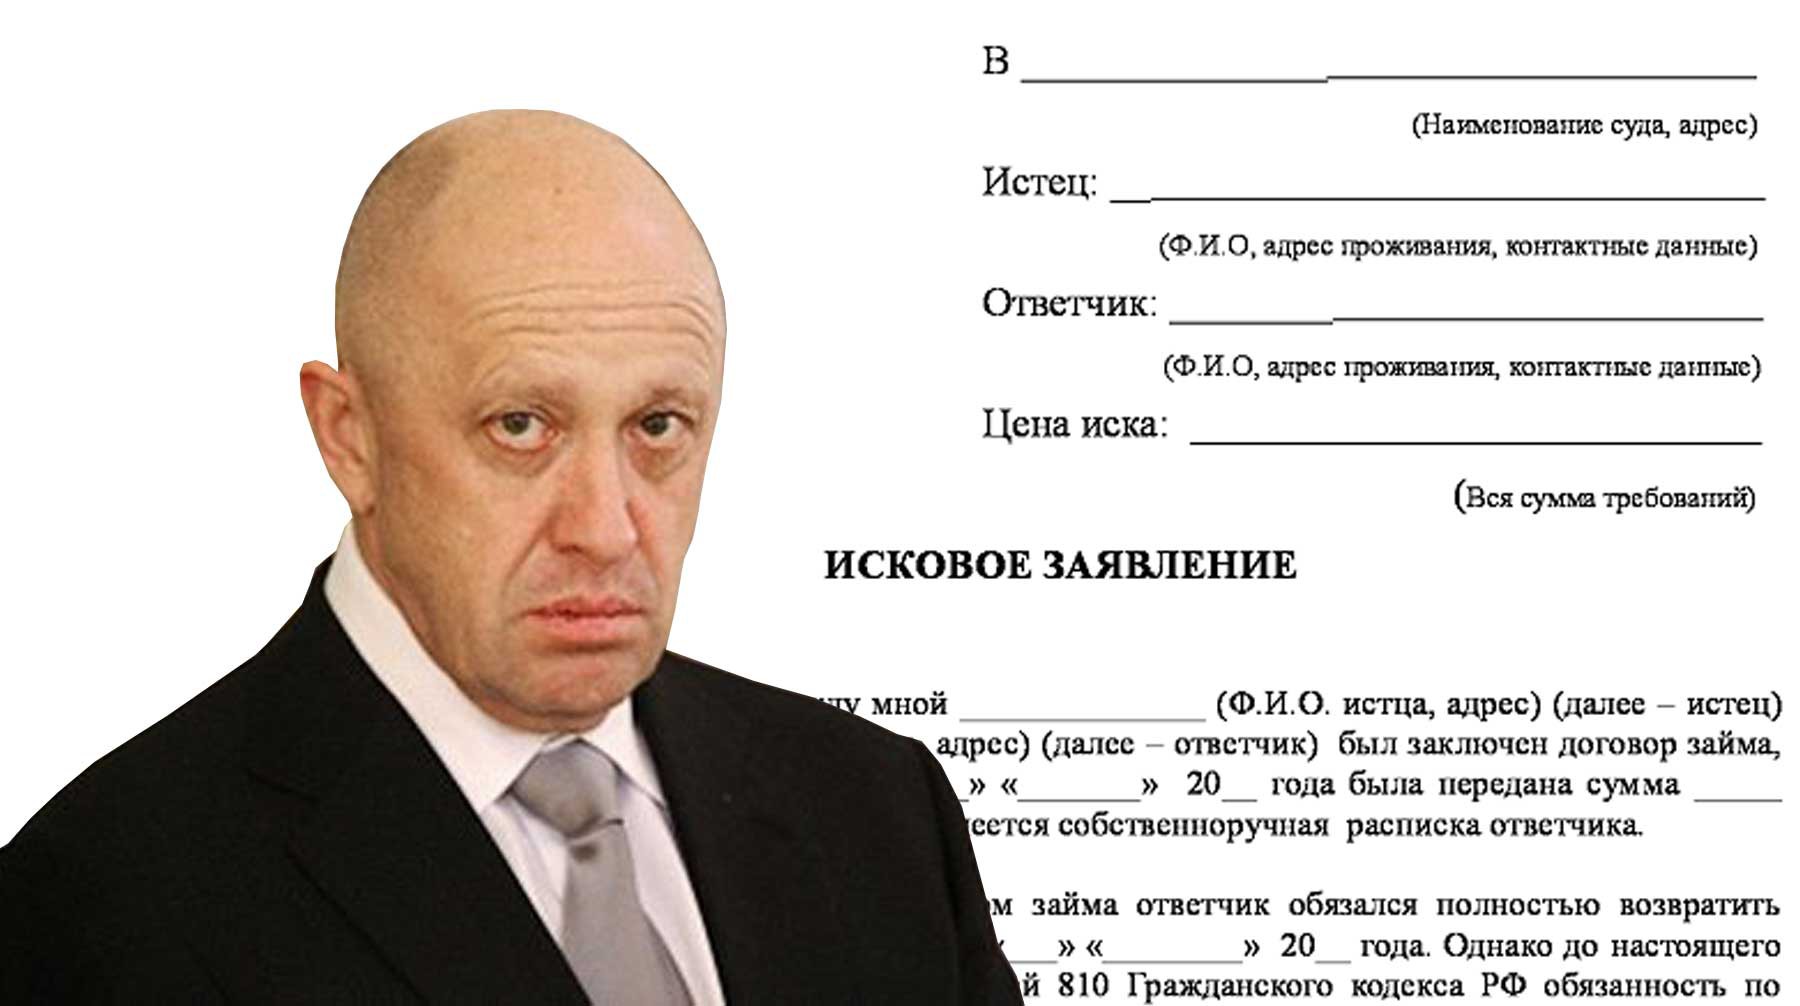 Пригожин снова обвинил «элиту» в набивании карманов, и намекнул о приходе «новой системы» в России